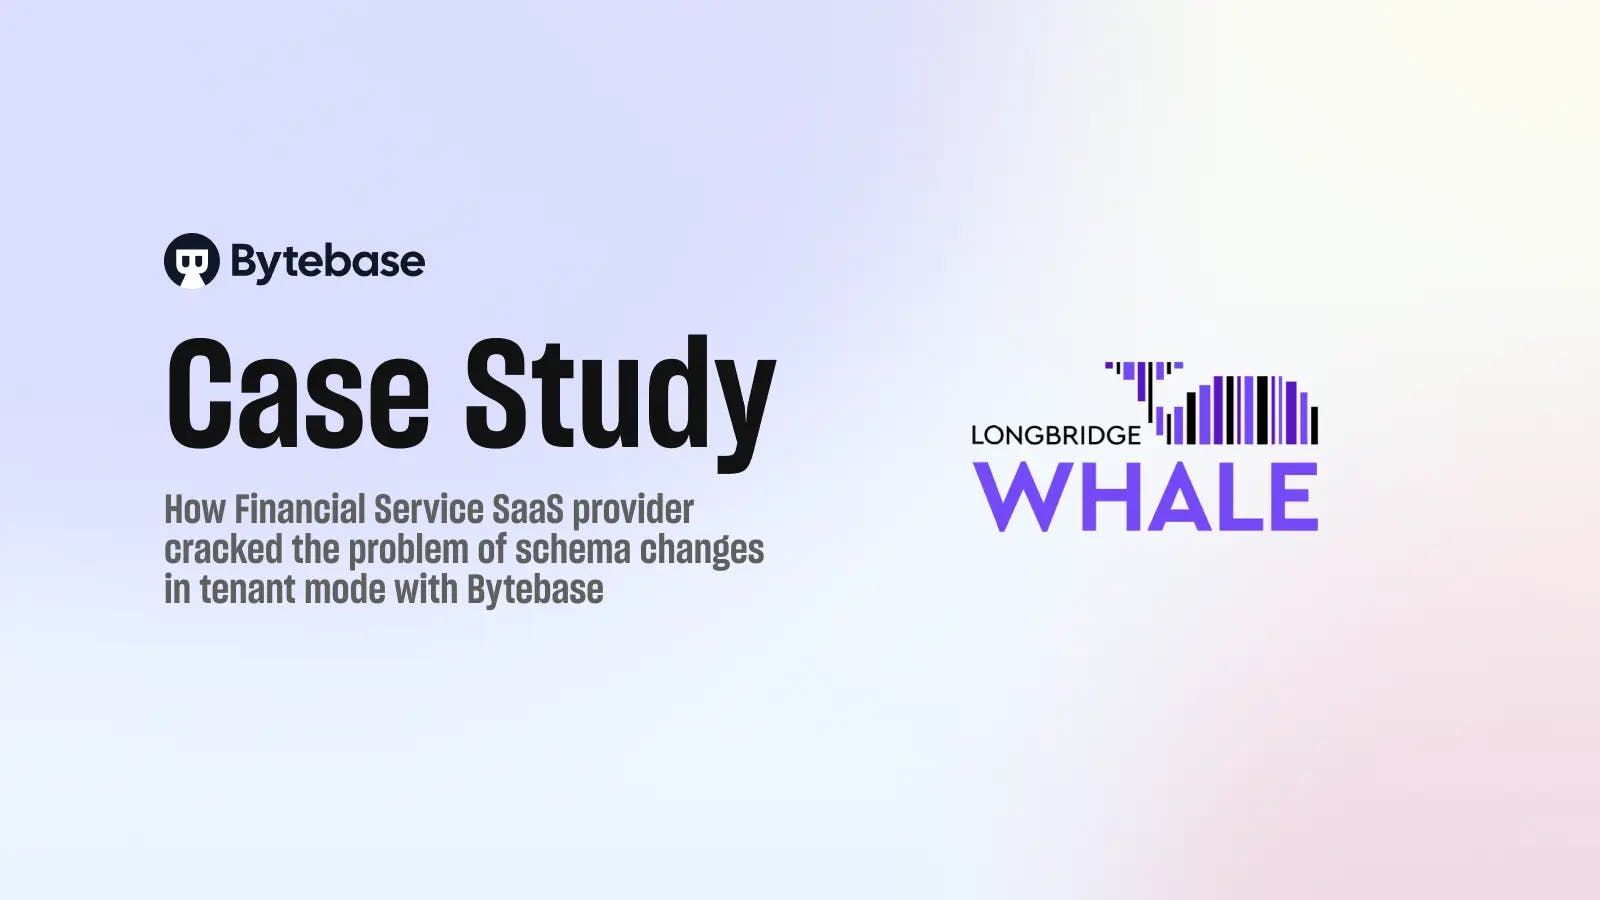 Case Study - Longbridge Whale